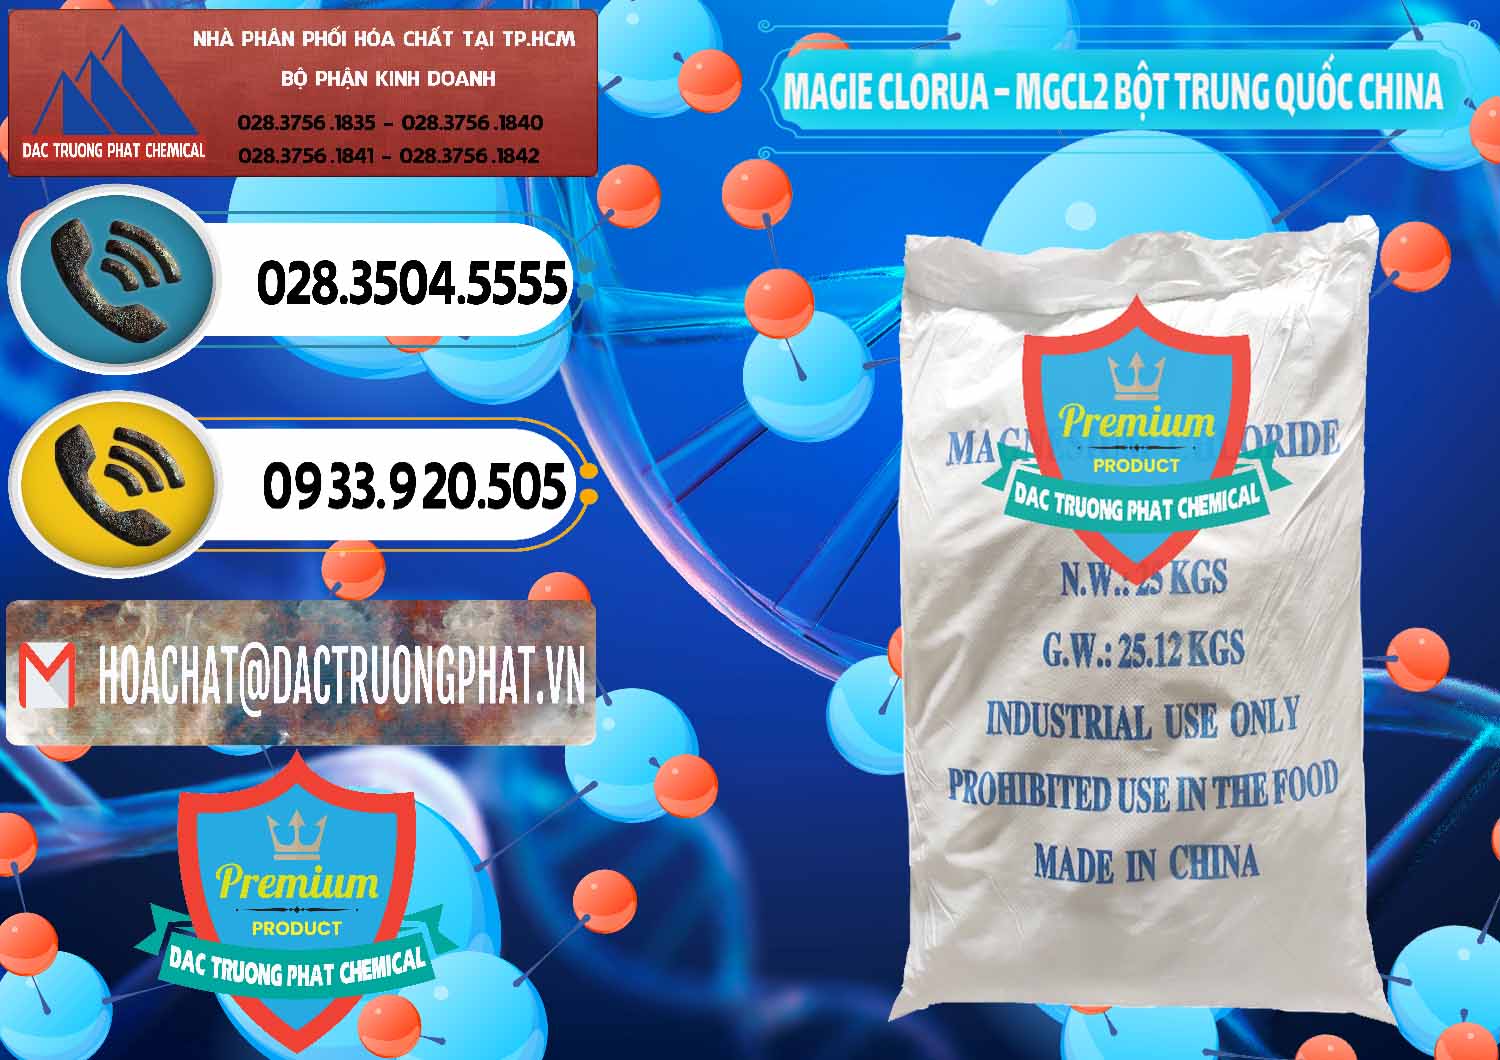 Cung cấp _ bán Magie Clorua – MGCL2 96% Dạng Bột Bao Chữ Xanh Trung Quốc China - 0207 - Nơi phân phối ( nhập khẩu ) hóa chất tại TP.HCM - hoachatdetnhuom.vn